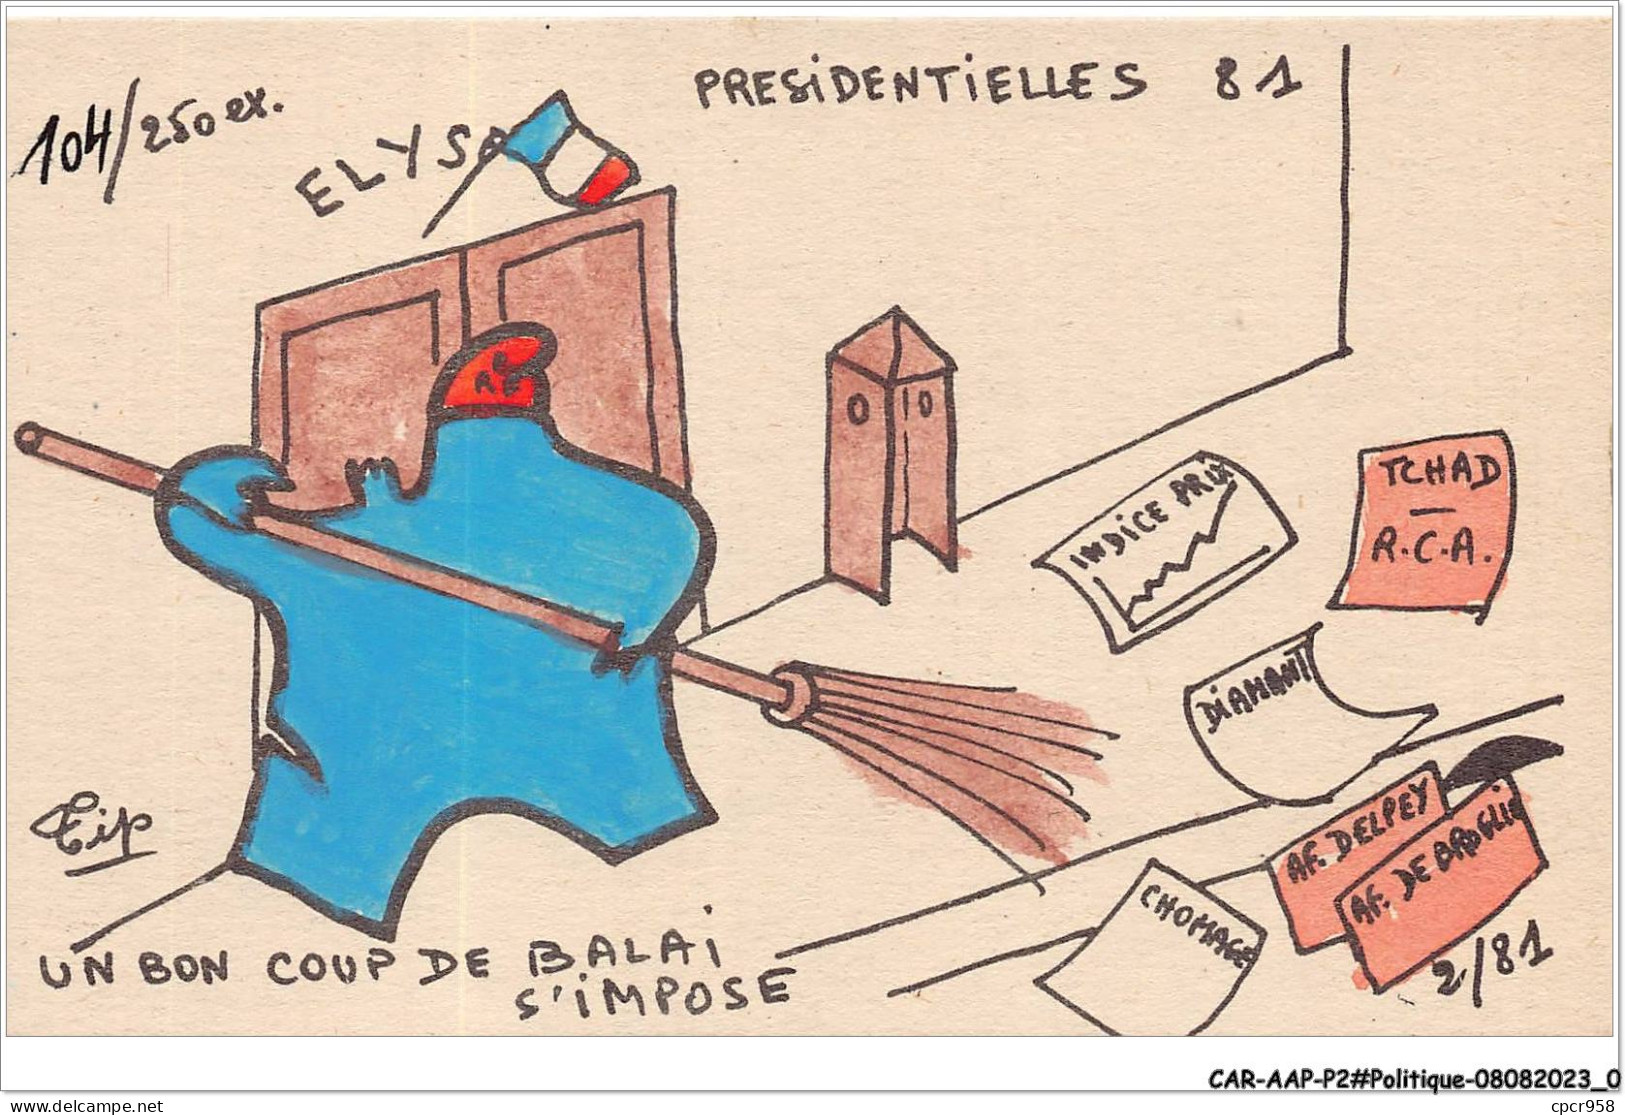 CAR-AAPP2-0083 - POLITIQUE - Presidentielles 81 - Un Bon Coup De Palais S'impose - Political Parties & Elections